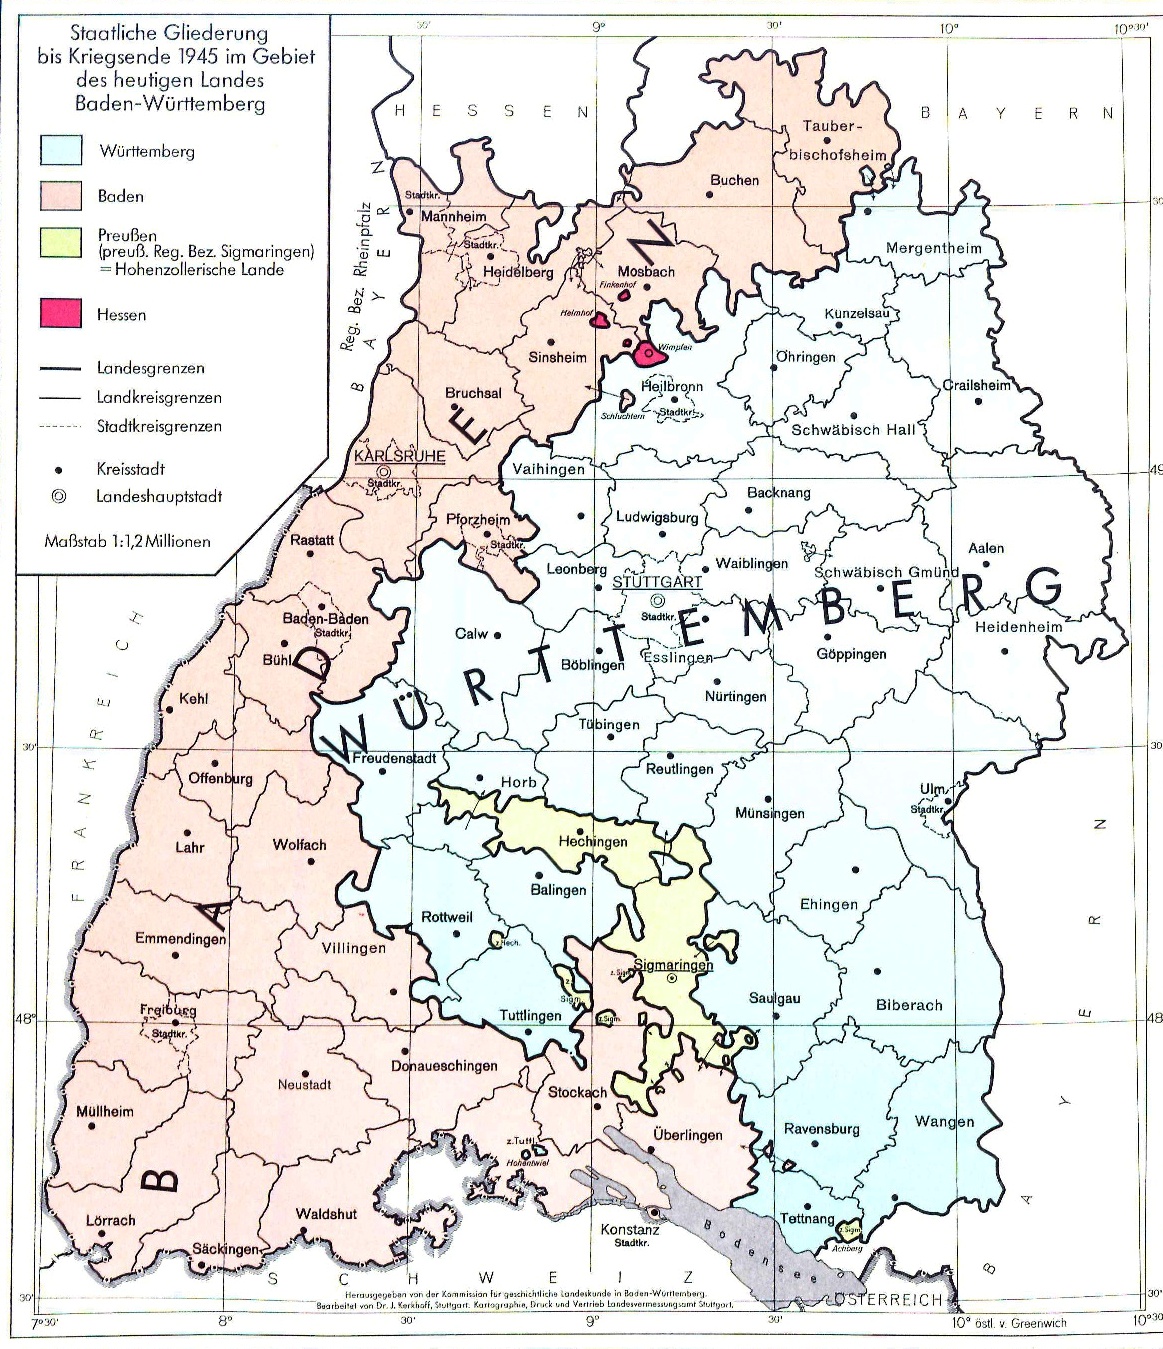 Die Landkarte zeigt die Staatliche Gliederung Südwestdeutschlands bis Kriegsende 1945, aufgeteilt in die Länder Württemberg, Baden und des preußischen Regierungsbezirk Sigmaringen bzw. Hohenzollern.